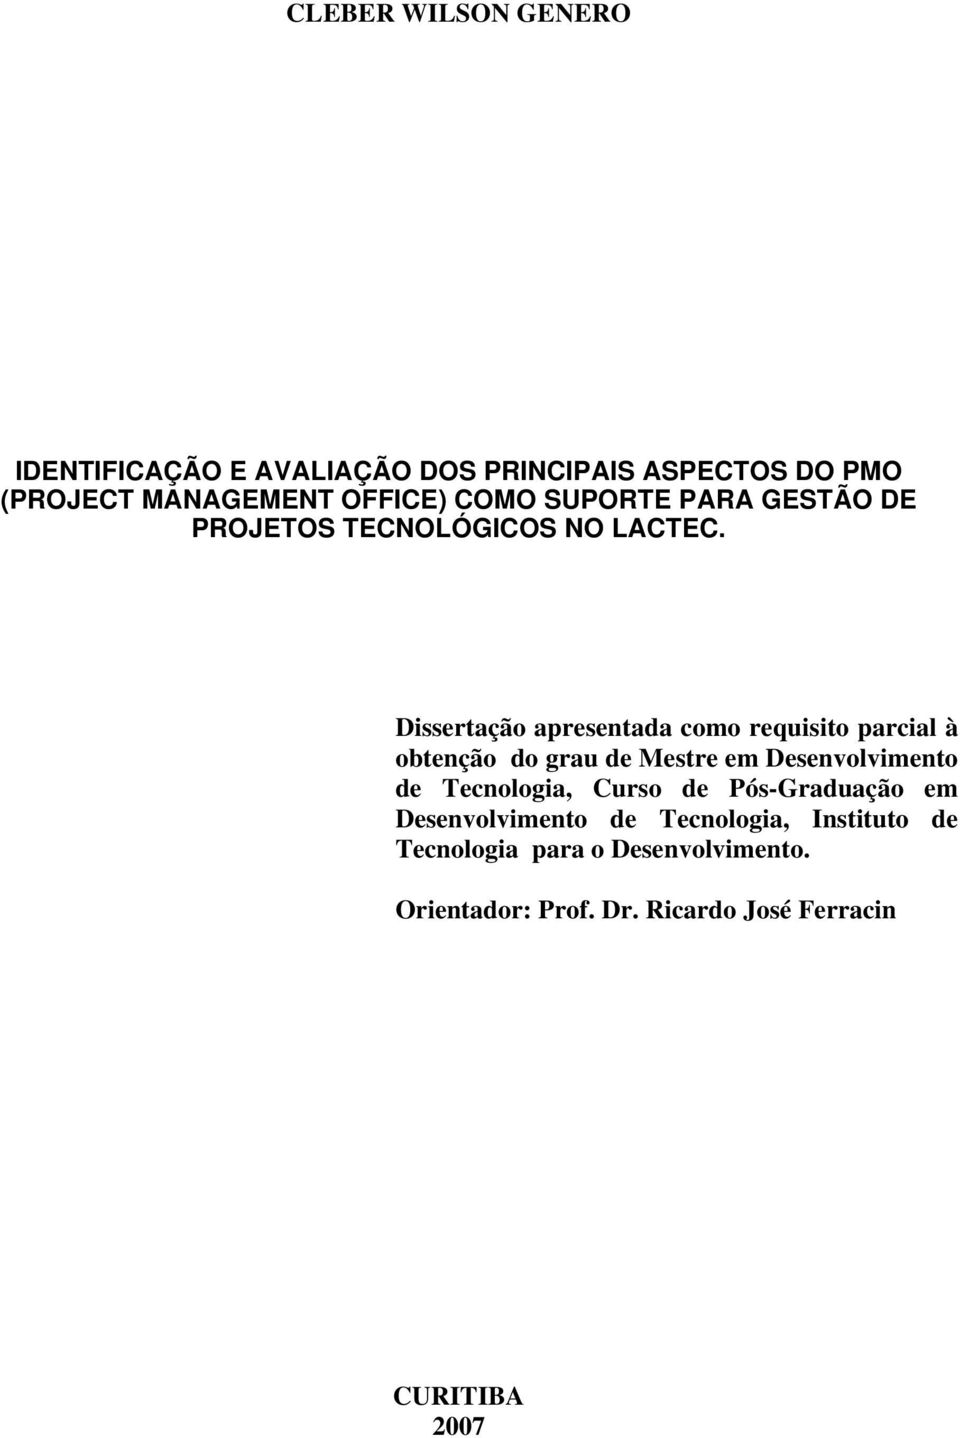 Dissertação apresentada como requisito parcial à obtenção do grau de Mestre em Desenvolvimento de Tecnologia,